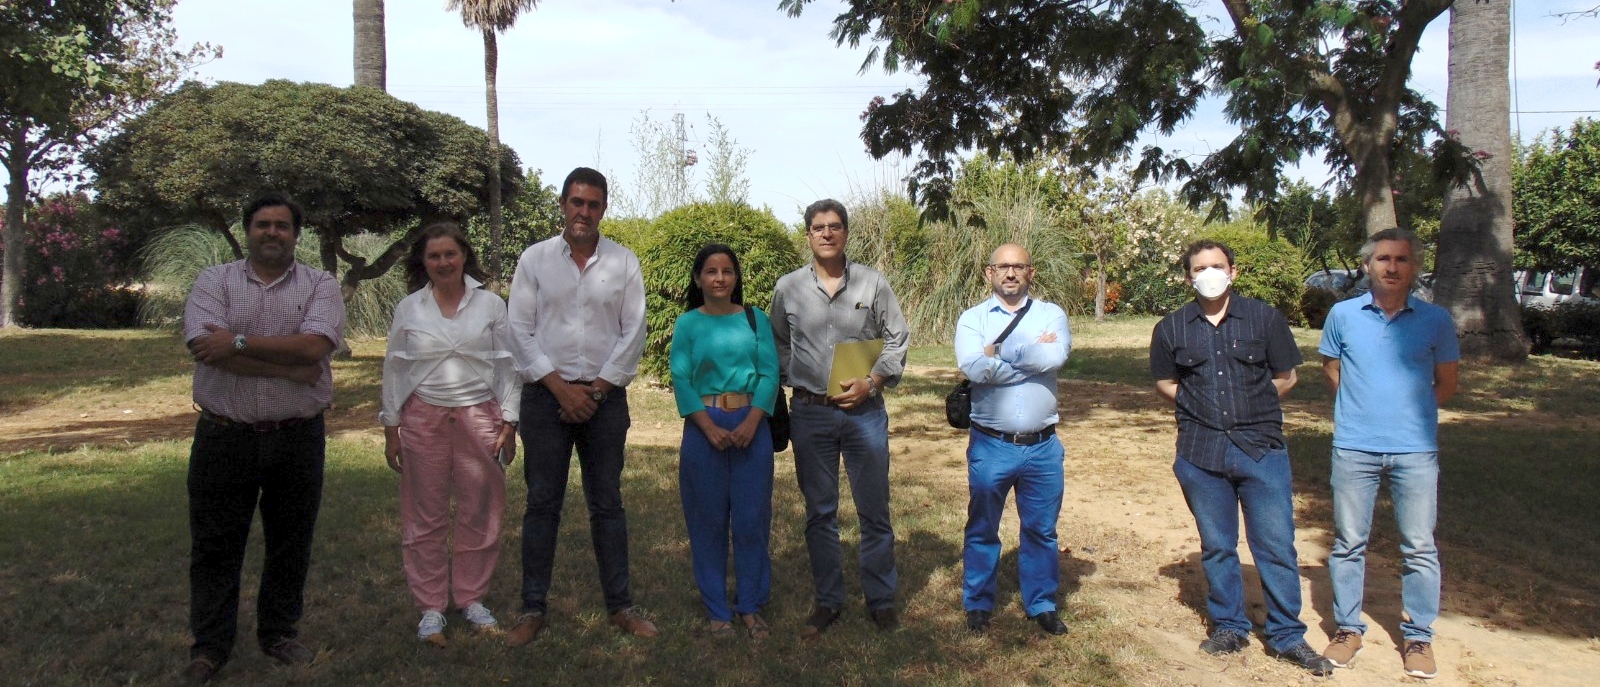 Un éxito en la jornada de presentación de resultados del proyecto europeo CONSOLE organizado en las instalaciones de IFAPA Centro Las Torres-Tomejil